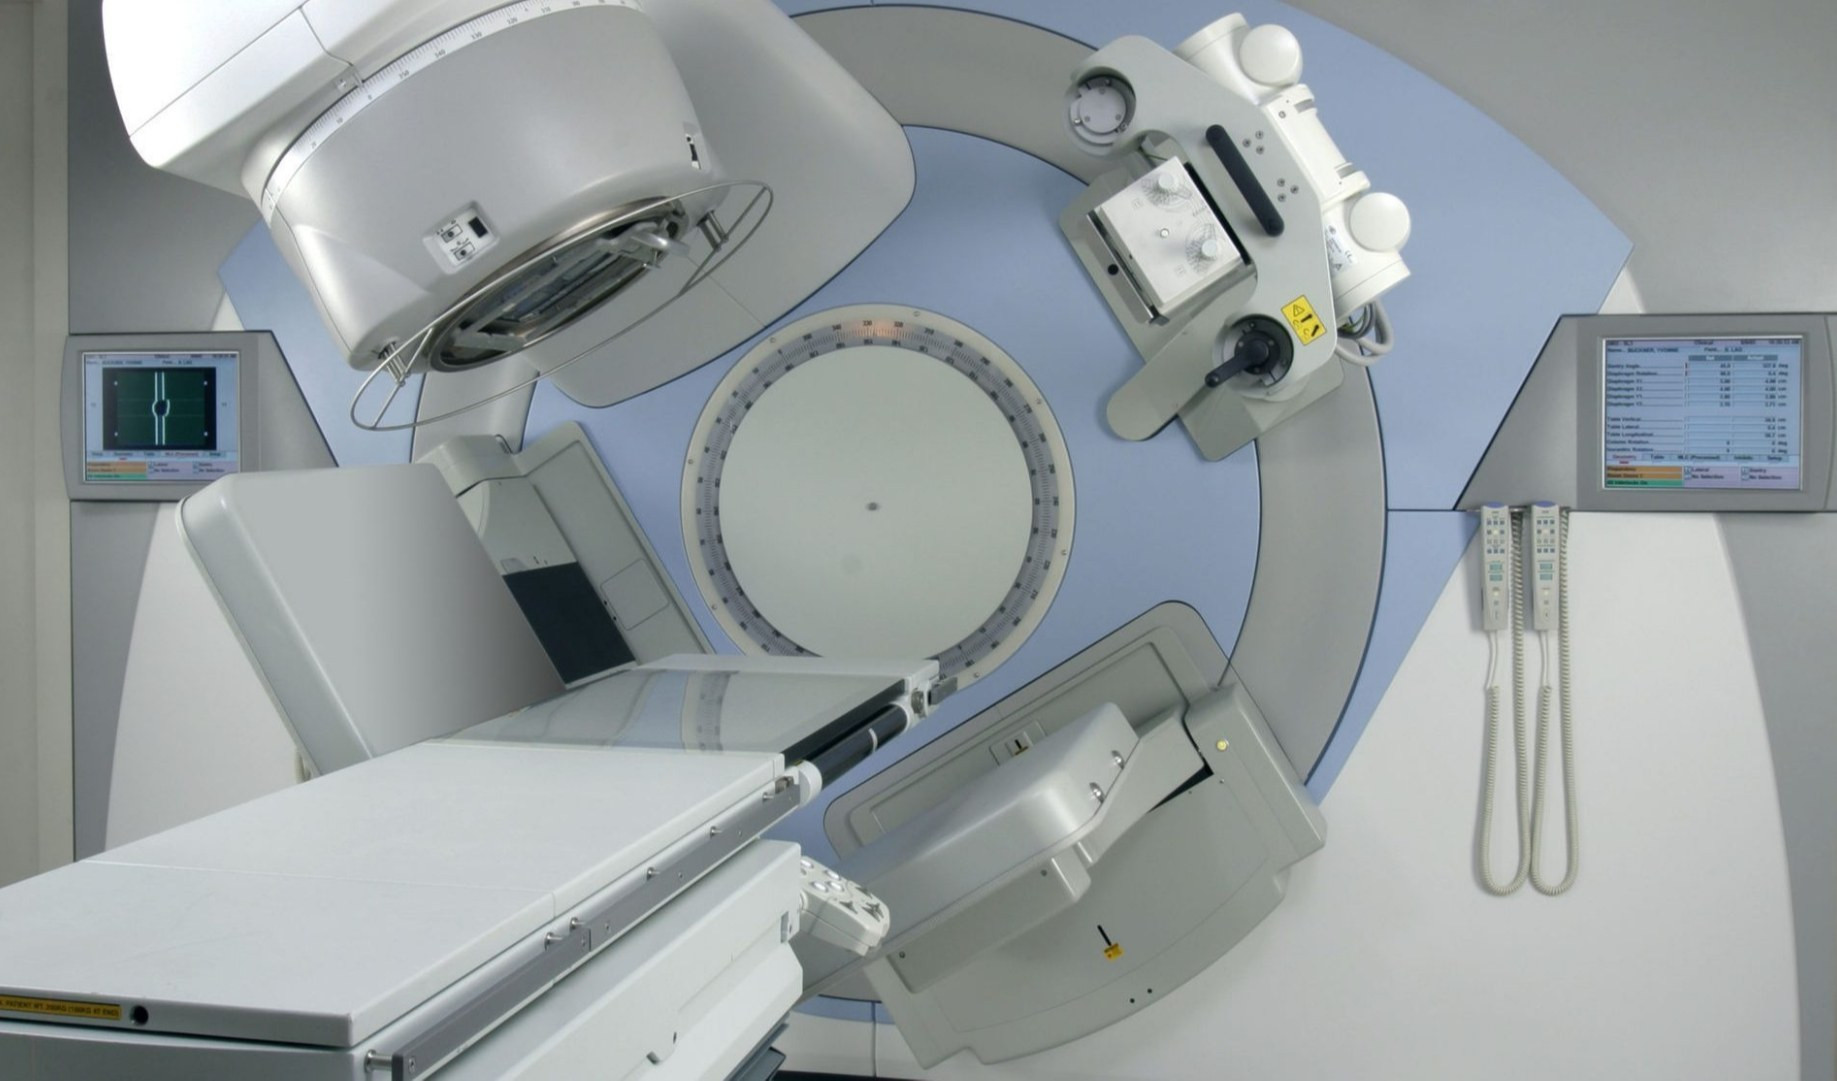 Prenotosalute, in 4 ore più di 500 prenotazioni online per esami radiologia